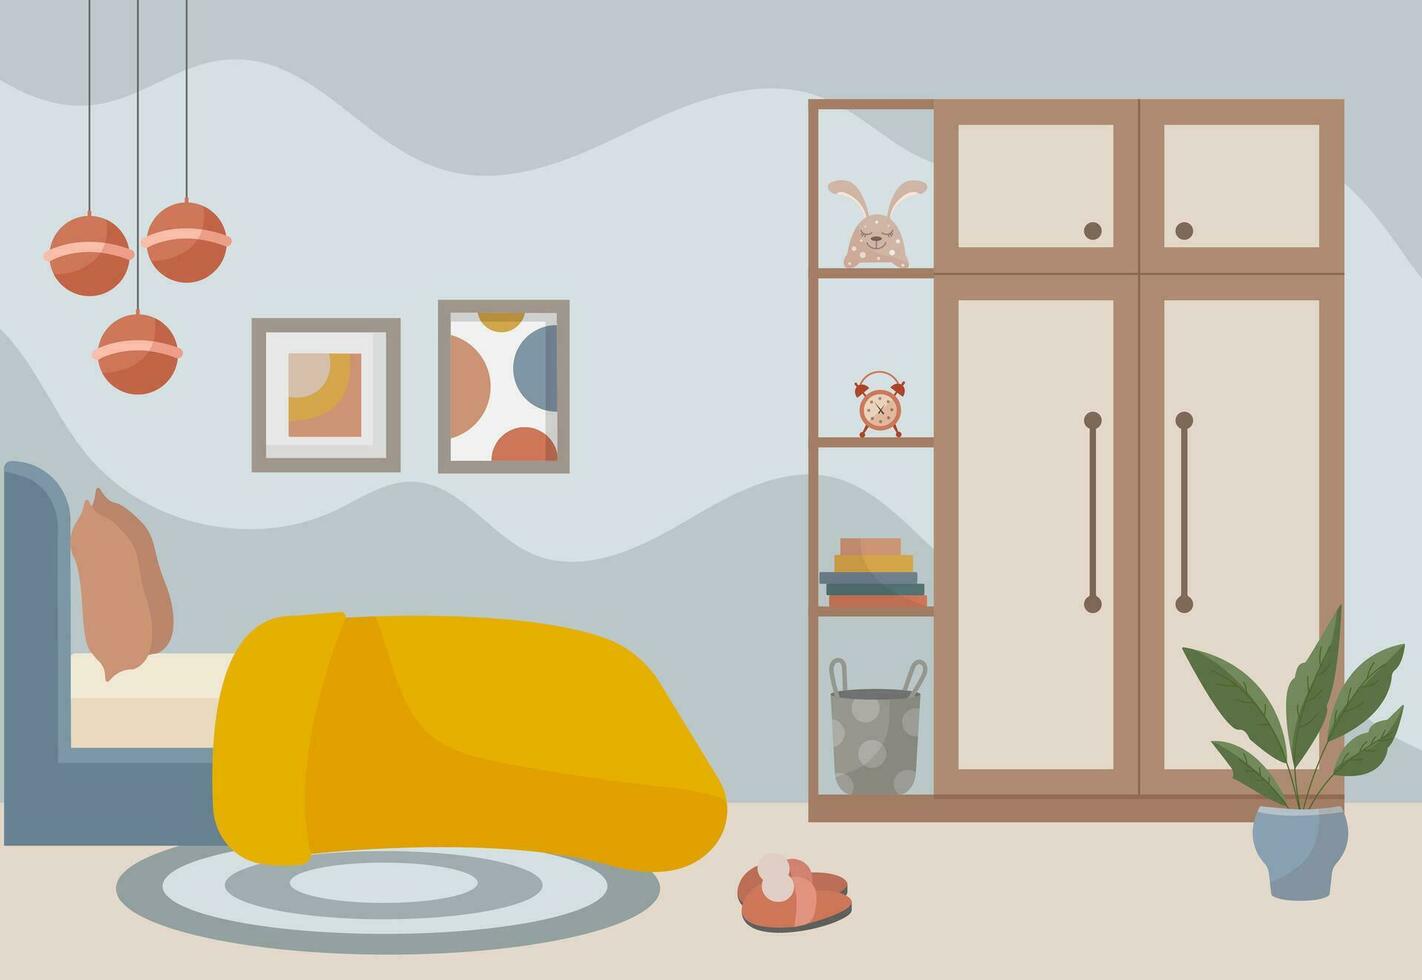 dormitorio interior cama, armario, alfombra, pinturas, libros, suave juguete, flor en un maceta. interior concepto. vector plano ilustración.